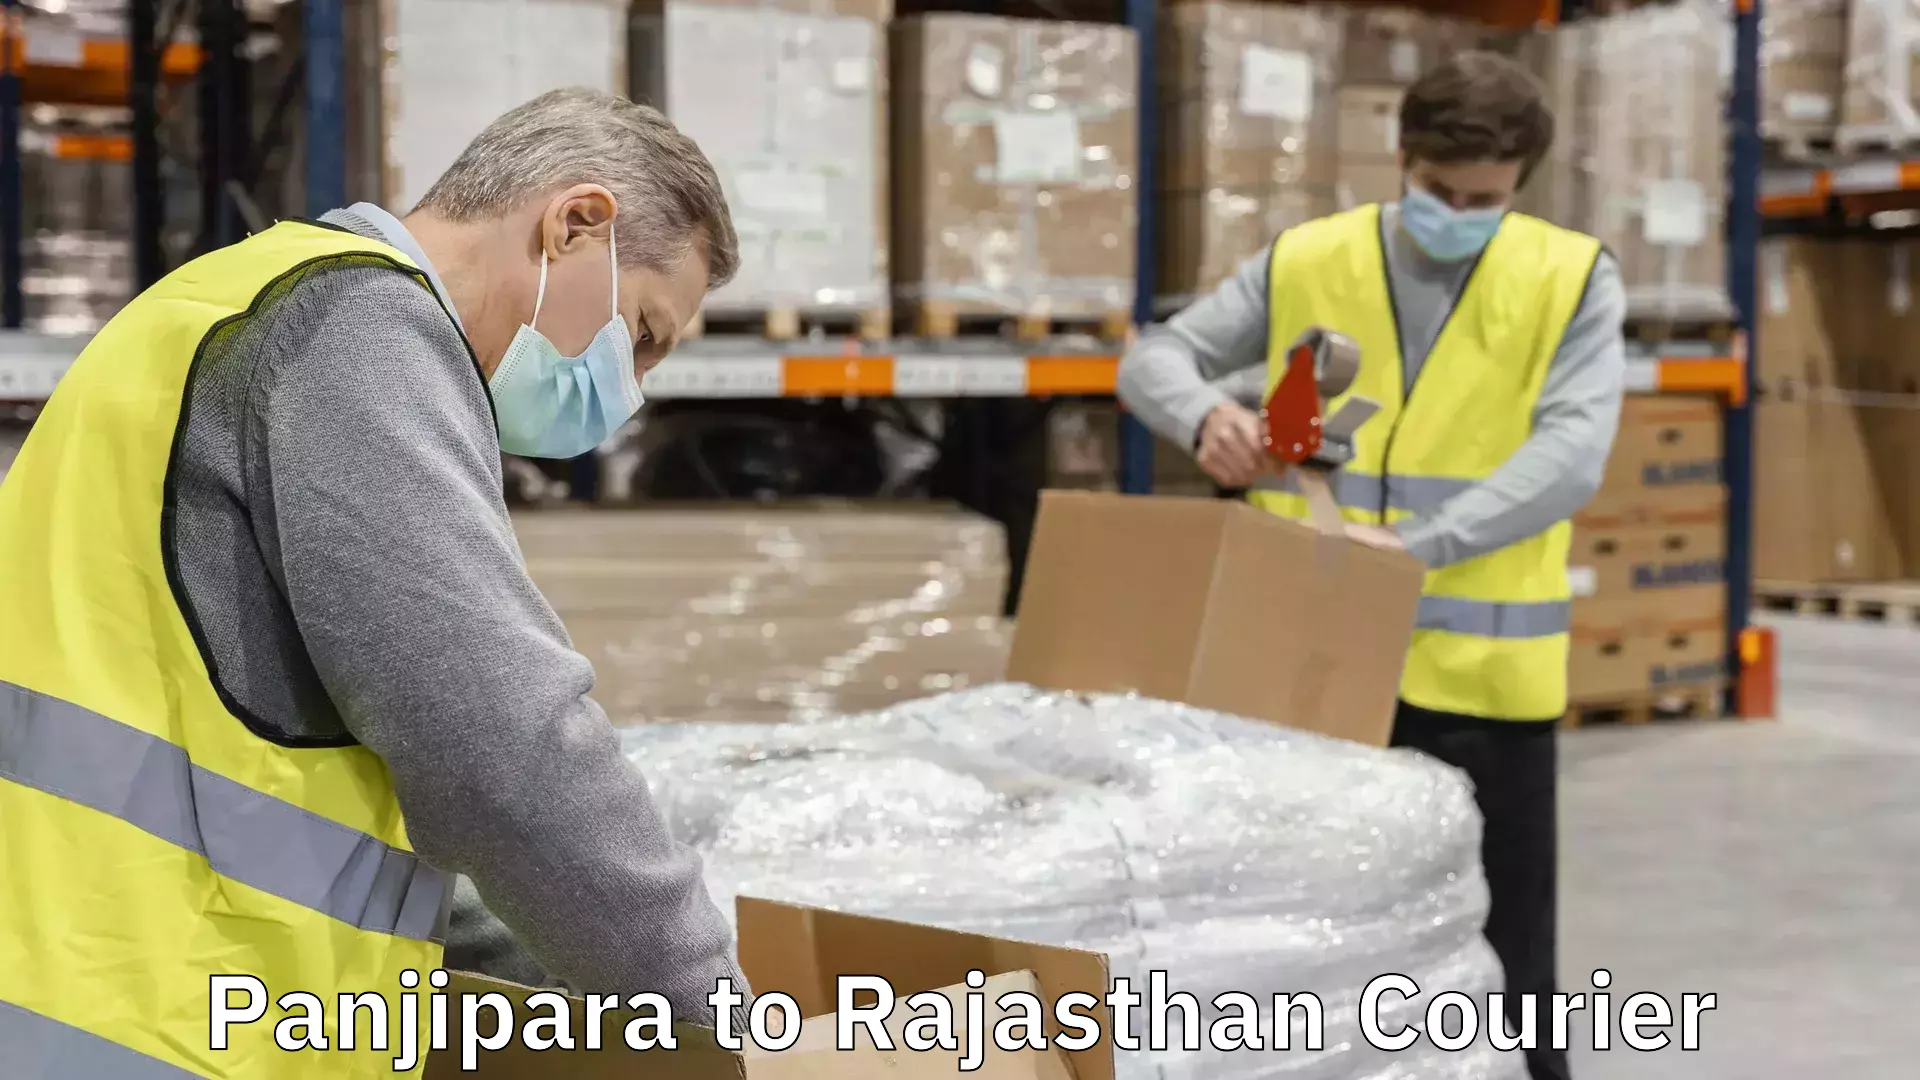 Express logistics service Panjipara to Rajasthan